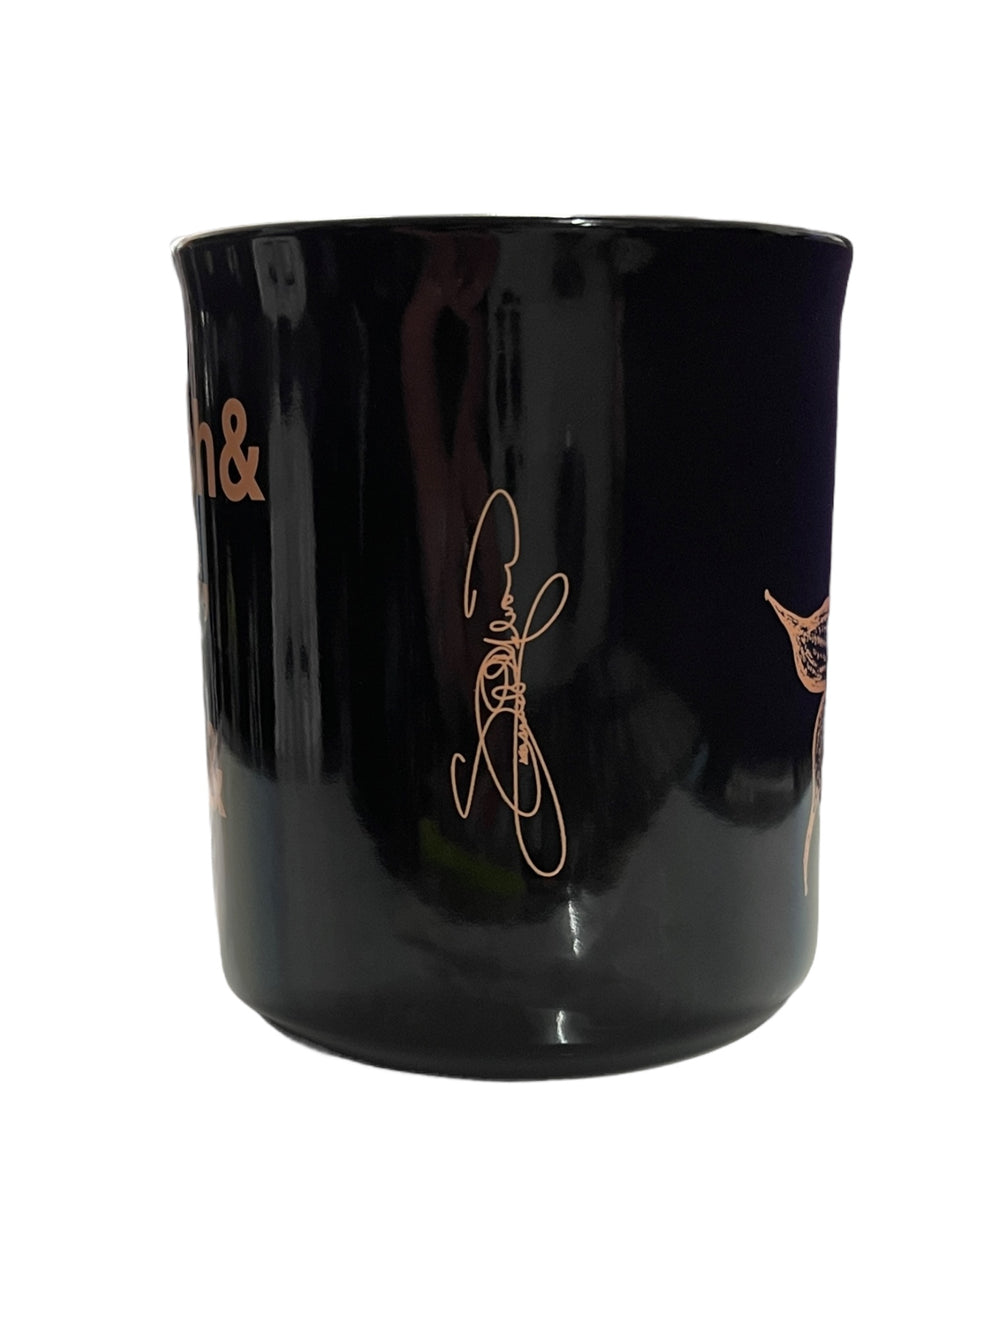 Prince – Starfish & Coffee Official Ceramic Mug Signature Peach & Black  PrincePrince –